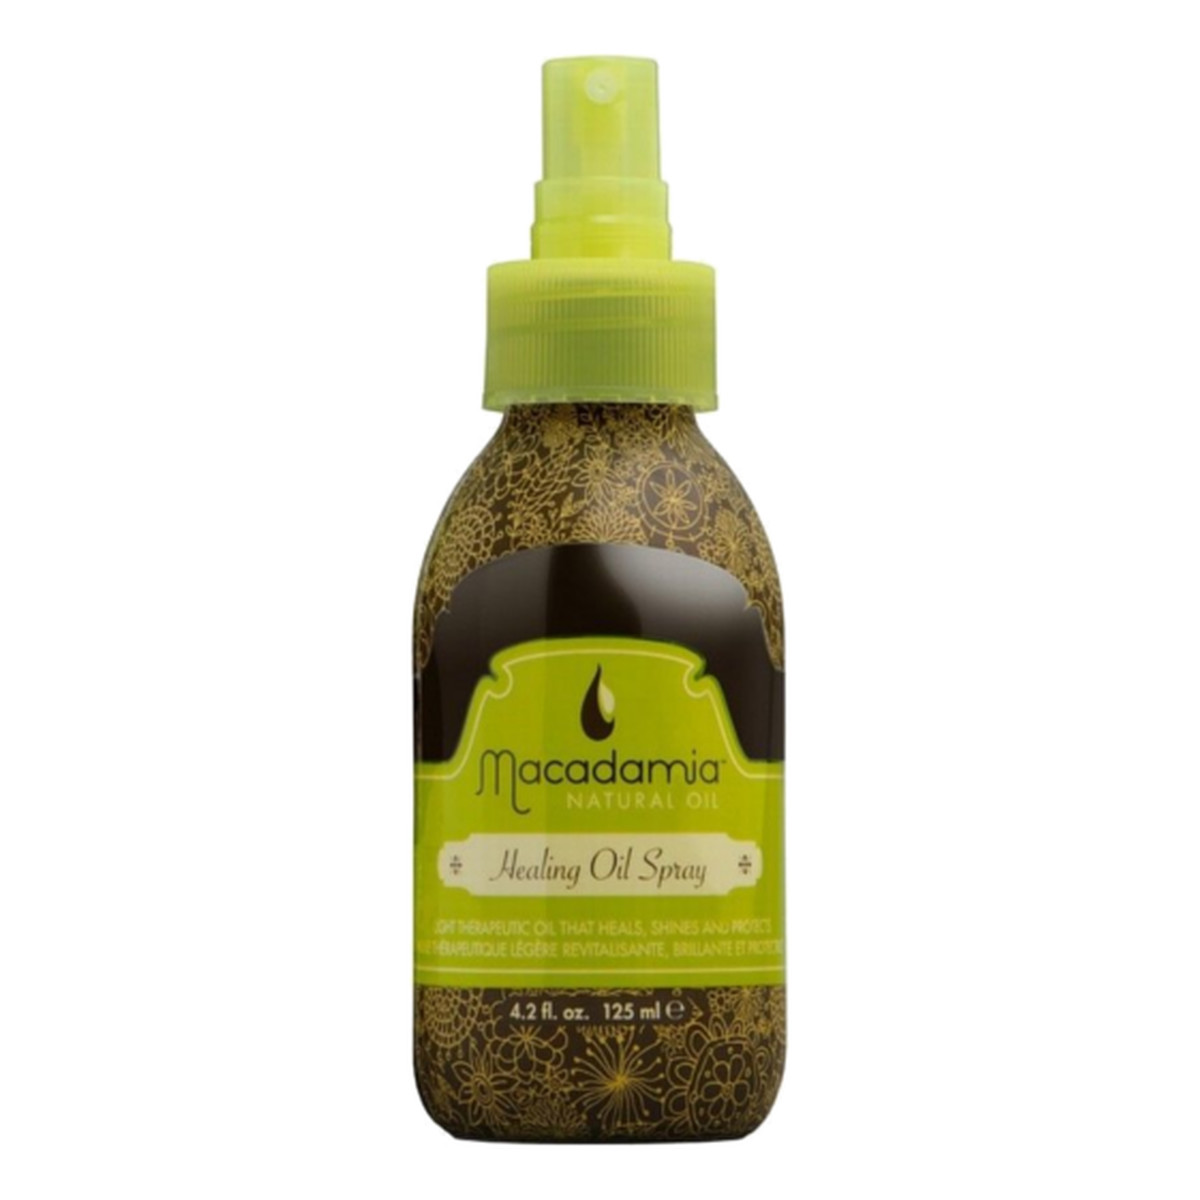 Macadamia Professional Natural Oil Healing Oil Spray Naturalny olejek do włosów w sprayu 125ml